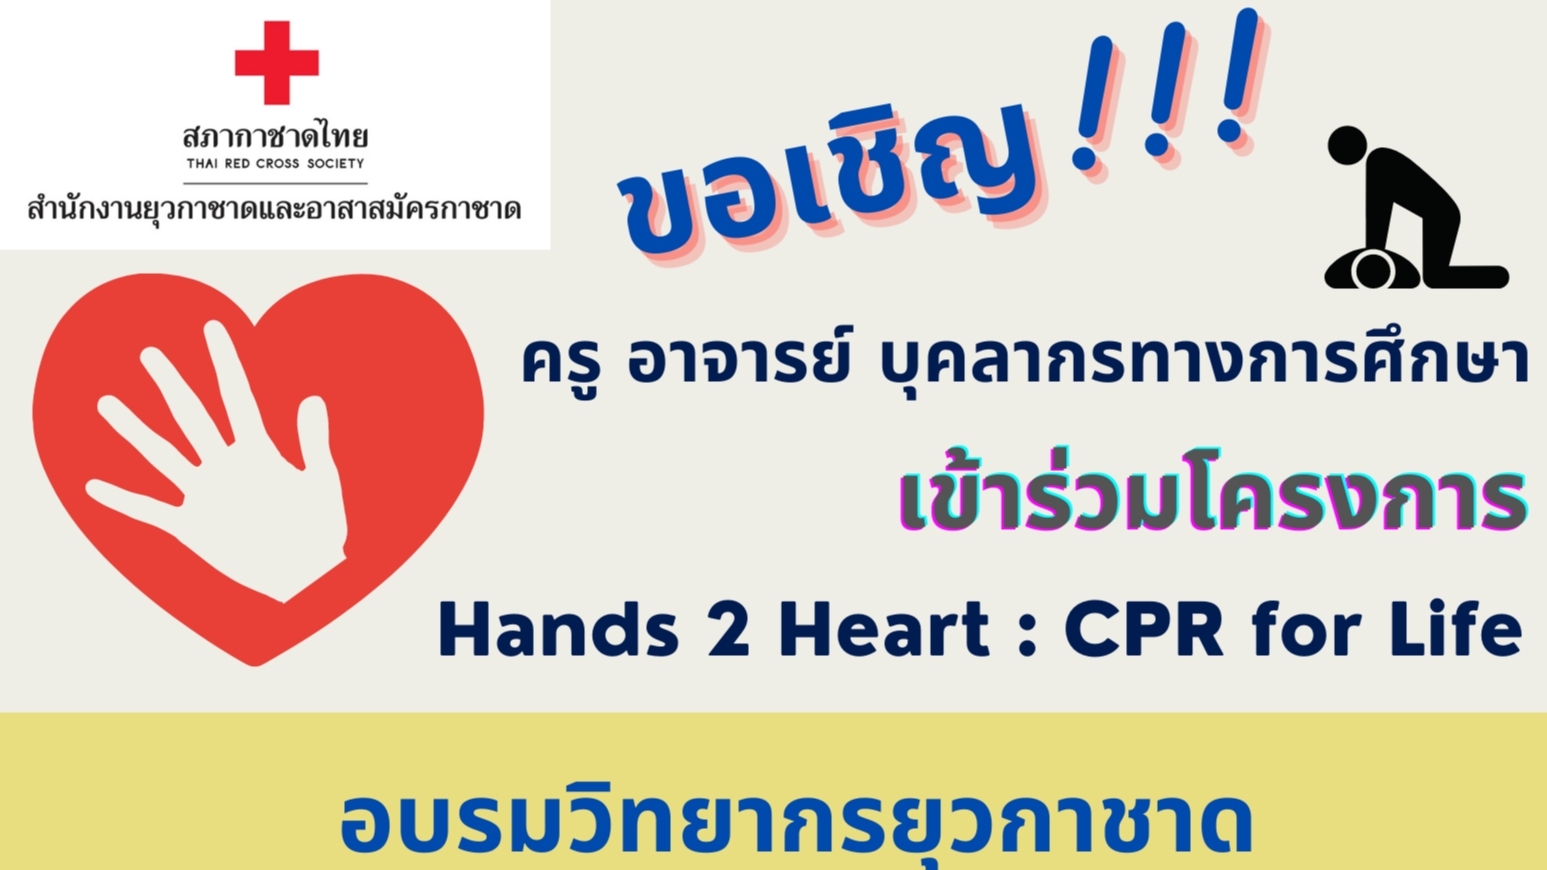 ขอเชิญครู อาจารย์ และบุคลากรทางการศึกษาทั่วประเทศเข้าร่วมโครงการ Hands 2 Heart : CPR for Life